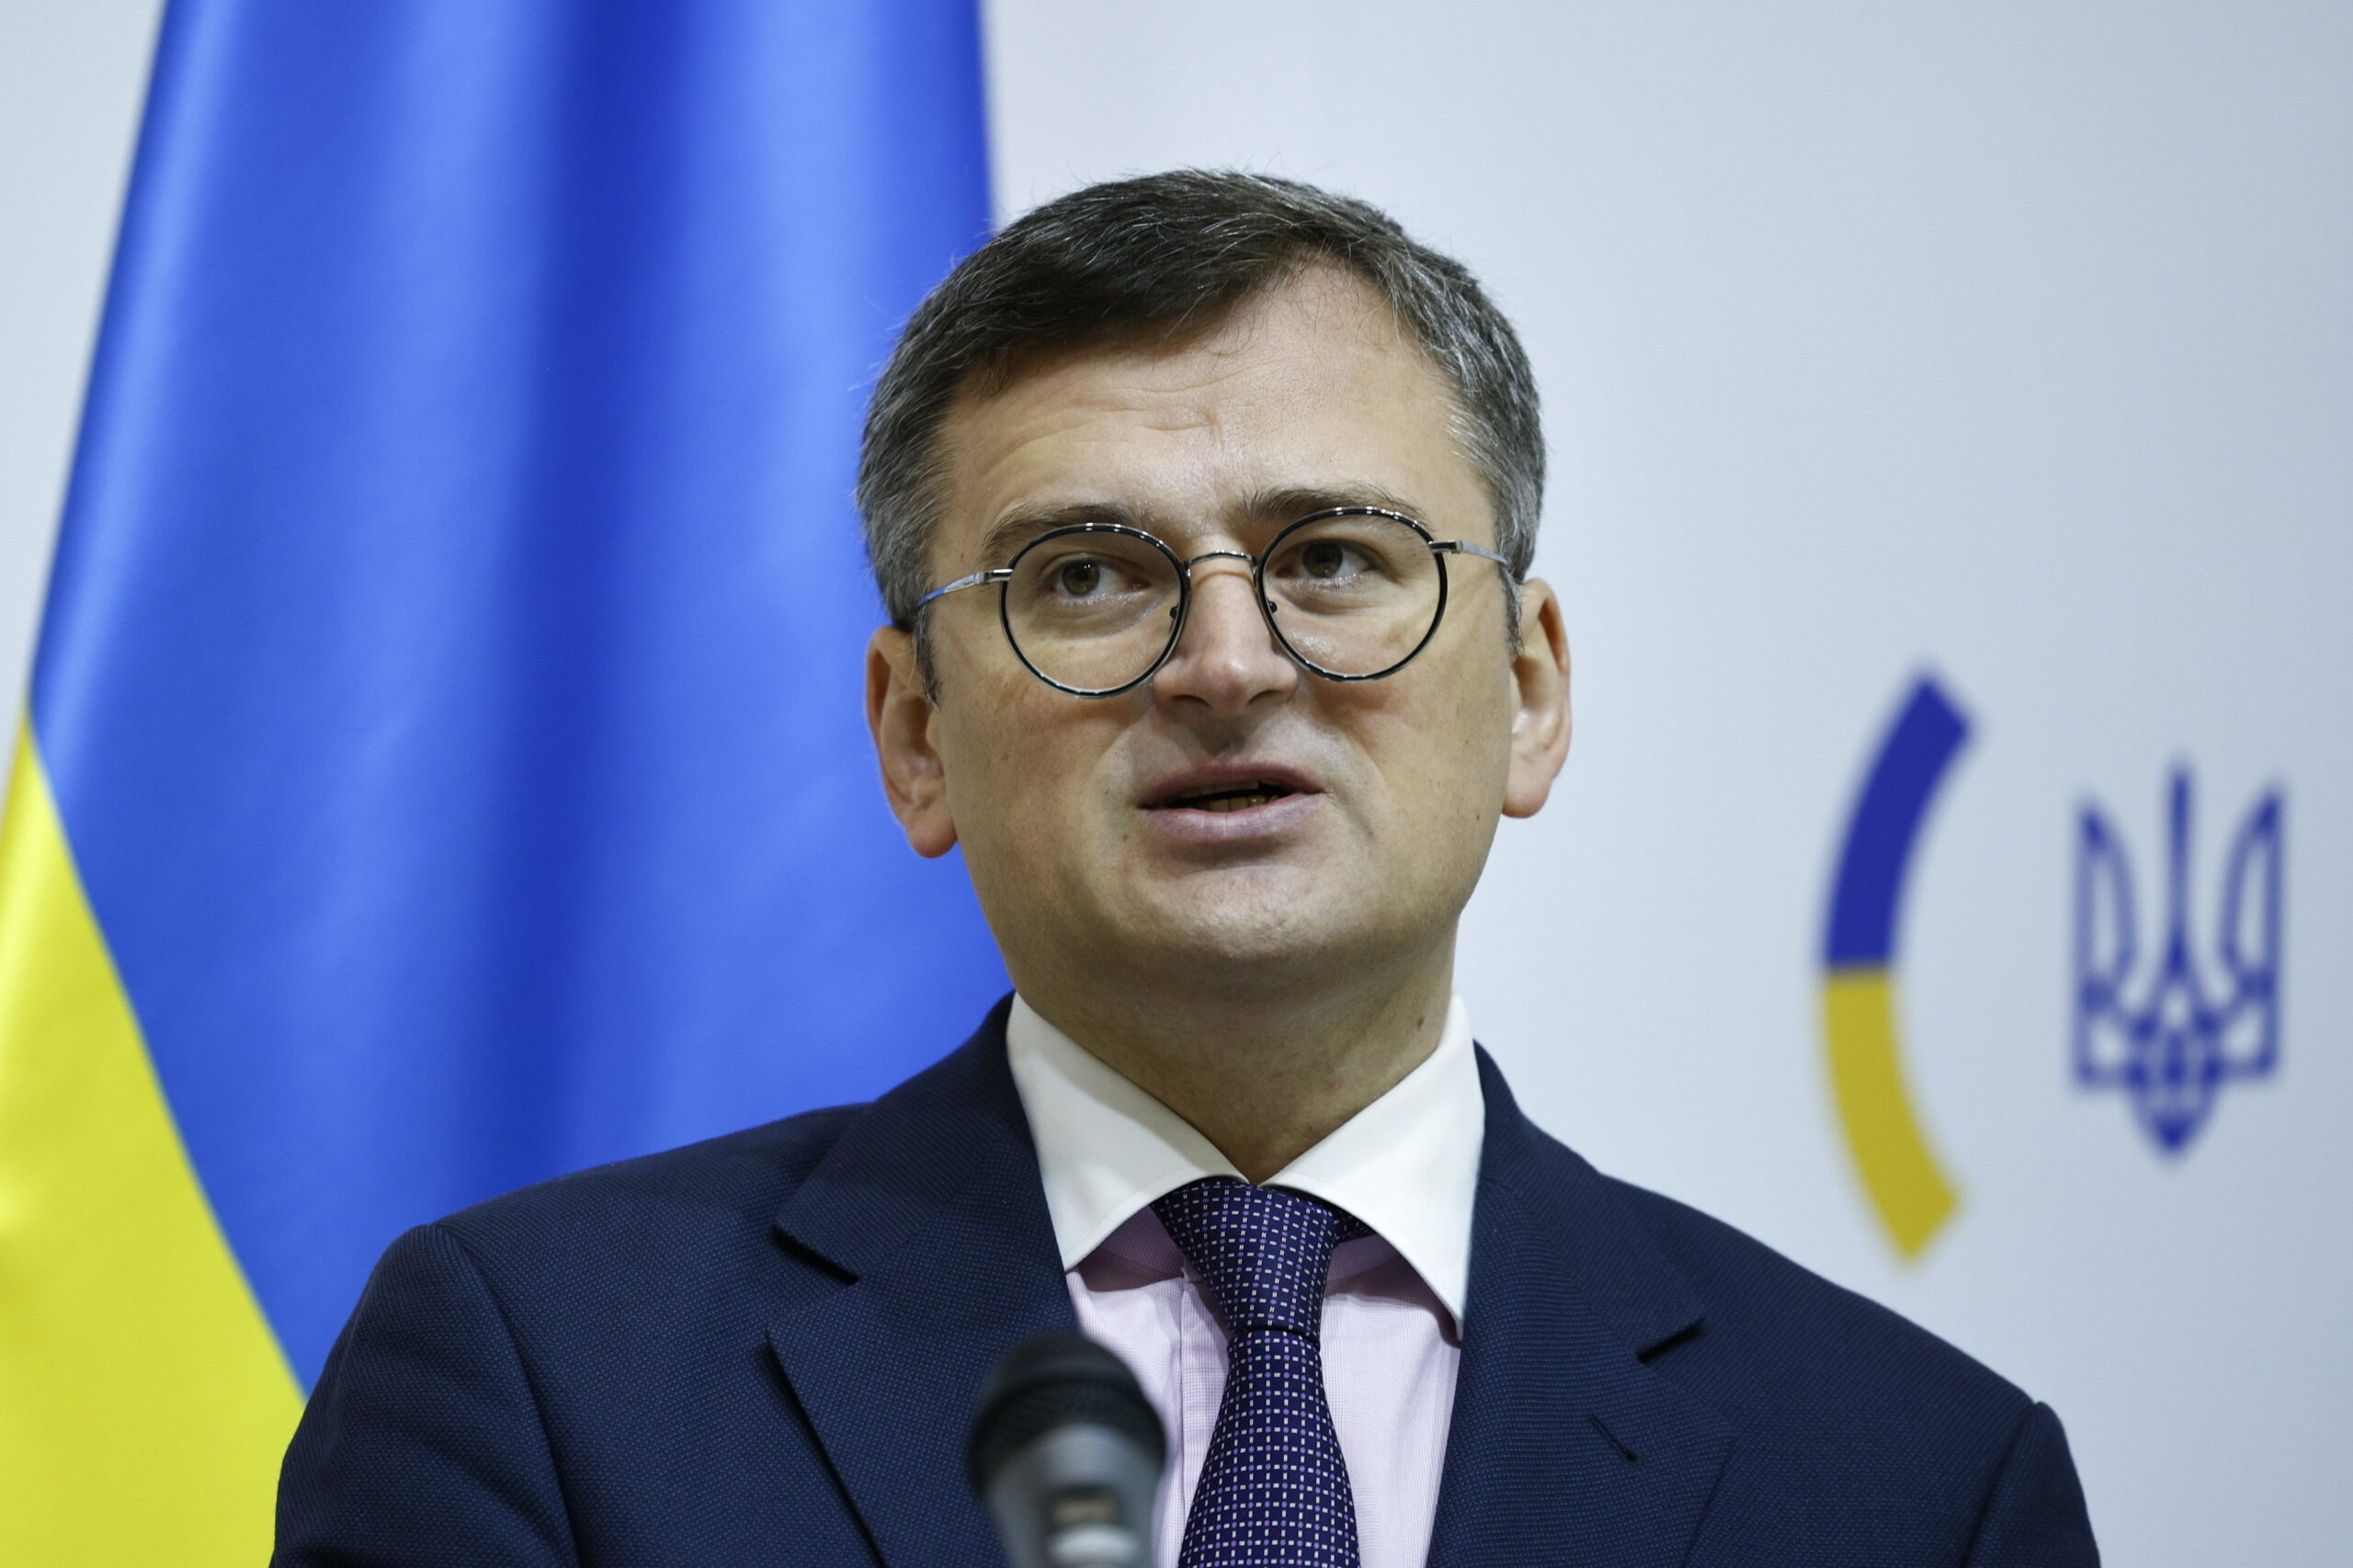 Vannak ellentétek annak megítélésében, hogyan érhetjük el a békét – mondta az ukrán külügyminiszter a Telexnek: